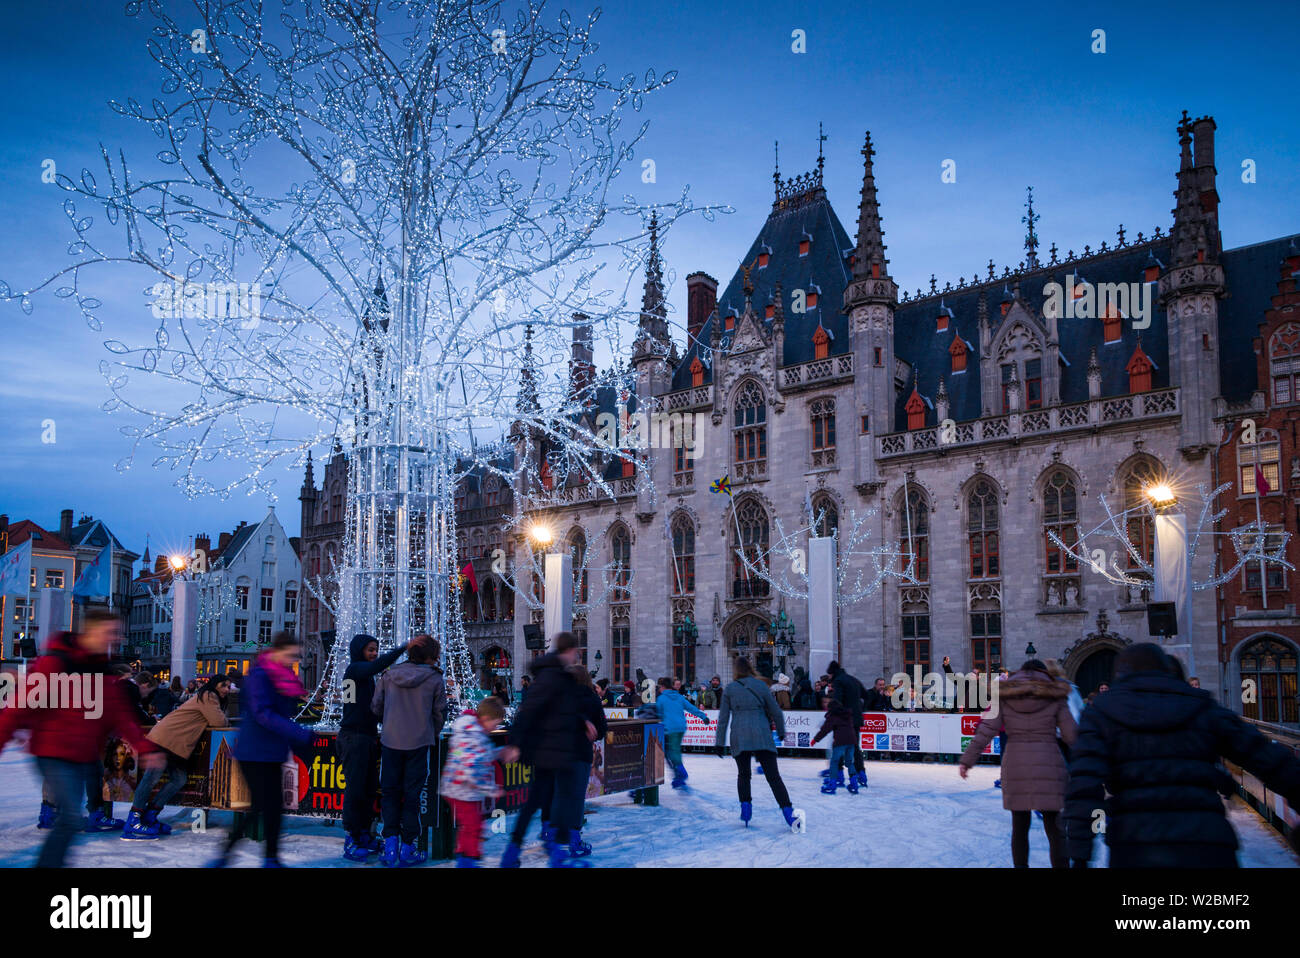 Belgique, Bruges, le Markt, Provinciaal Hof ancien bâtiment gouvernemental et patinoire, dusk Banque D'Images